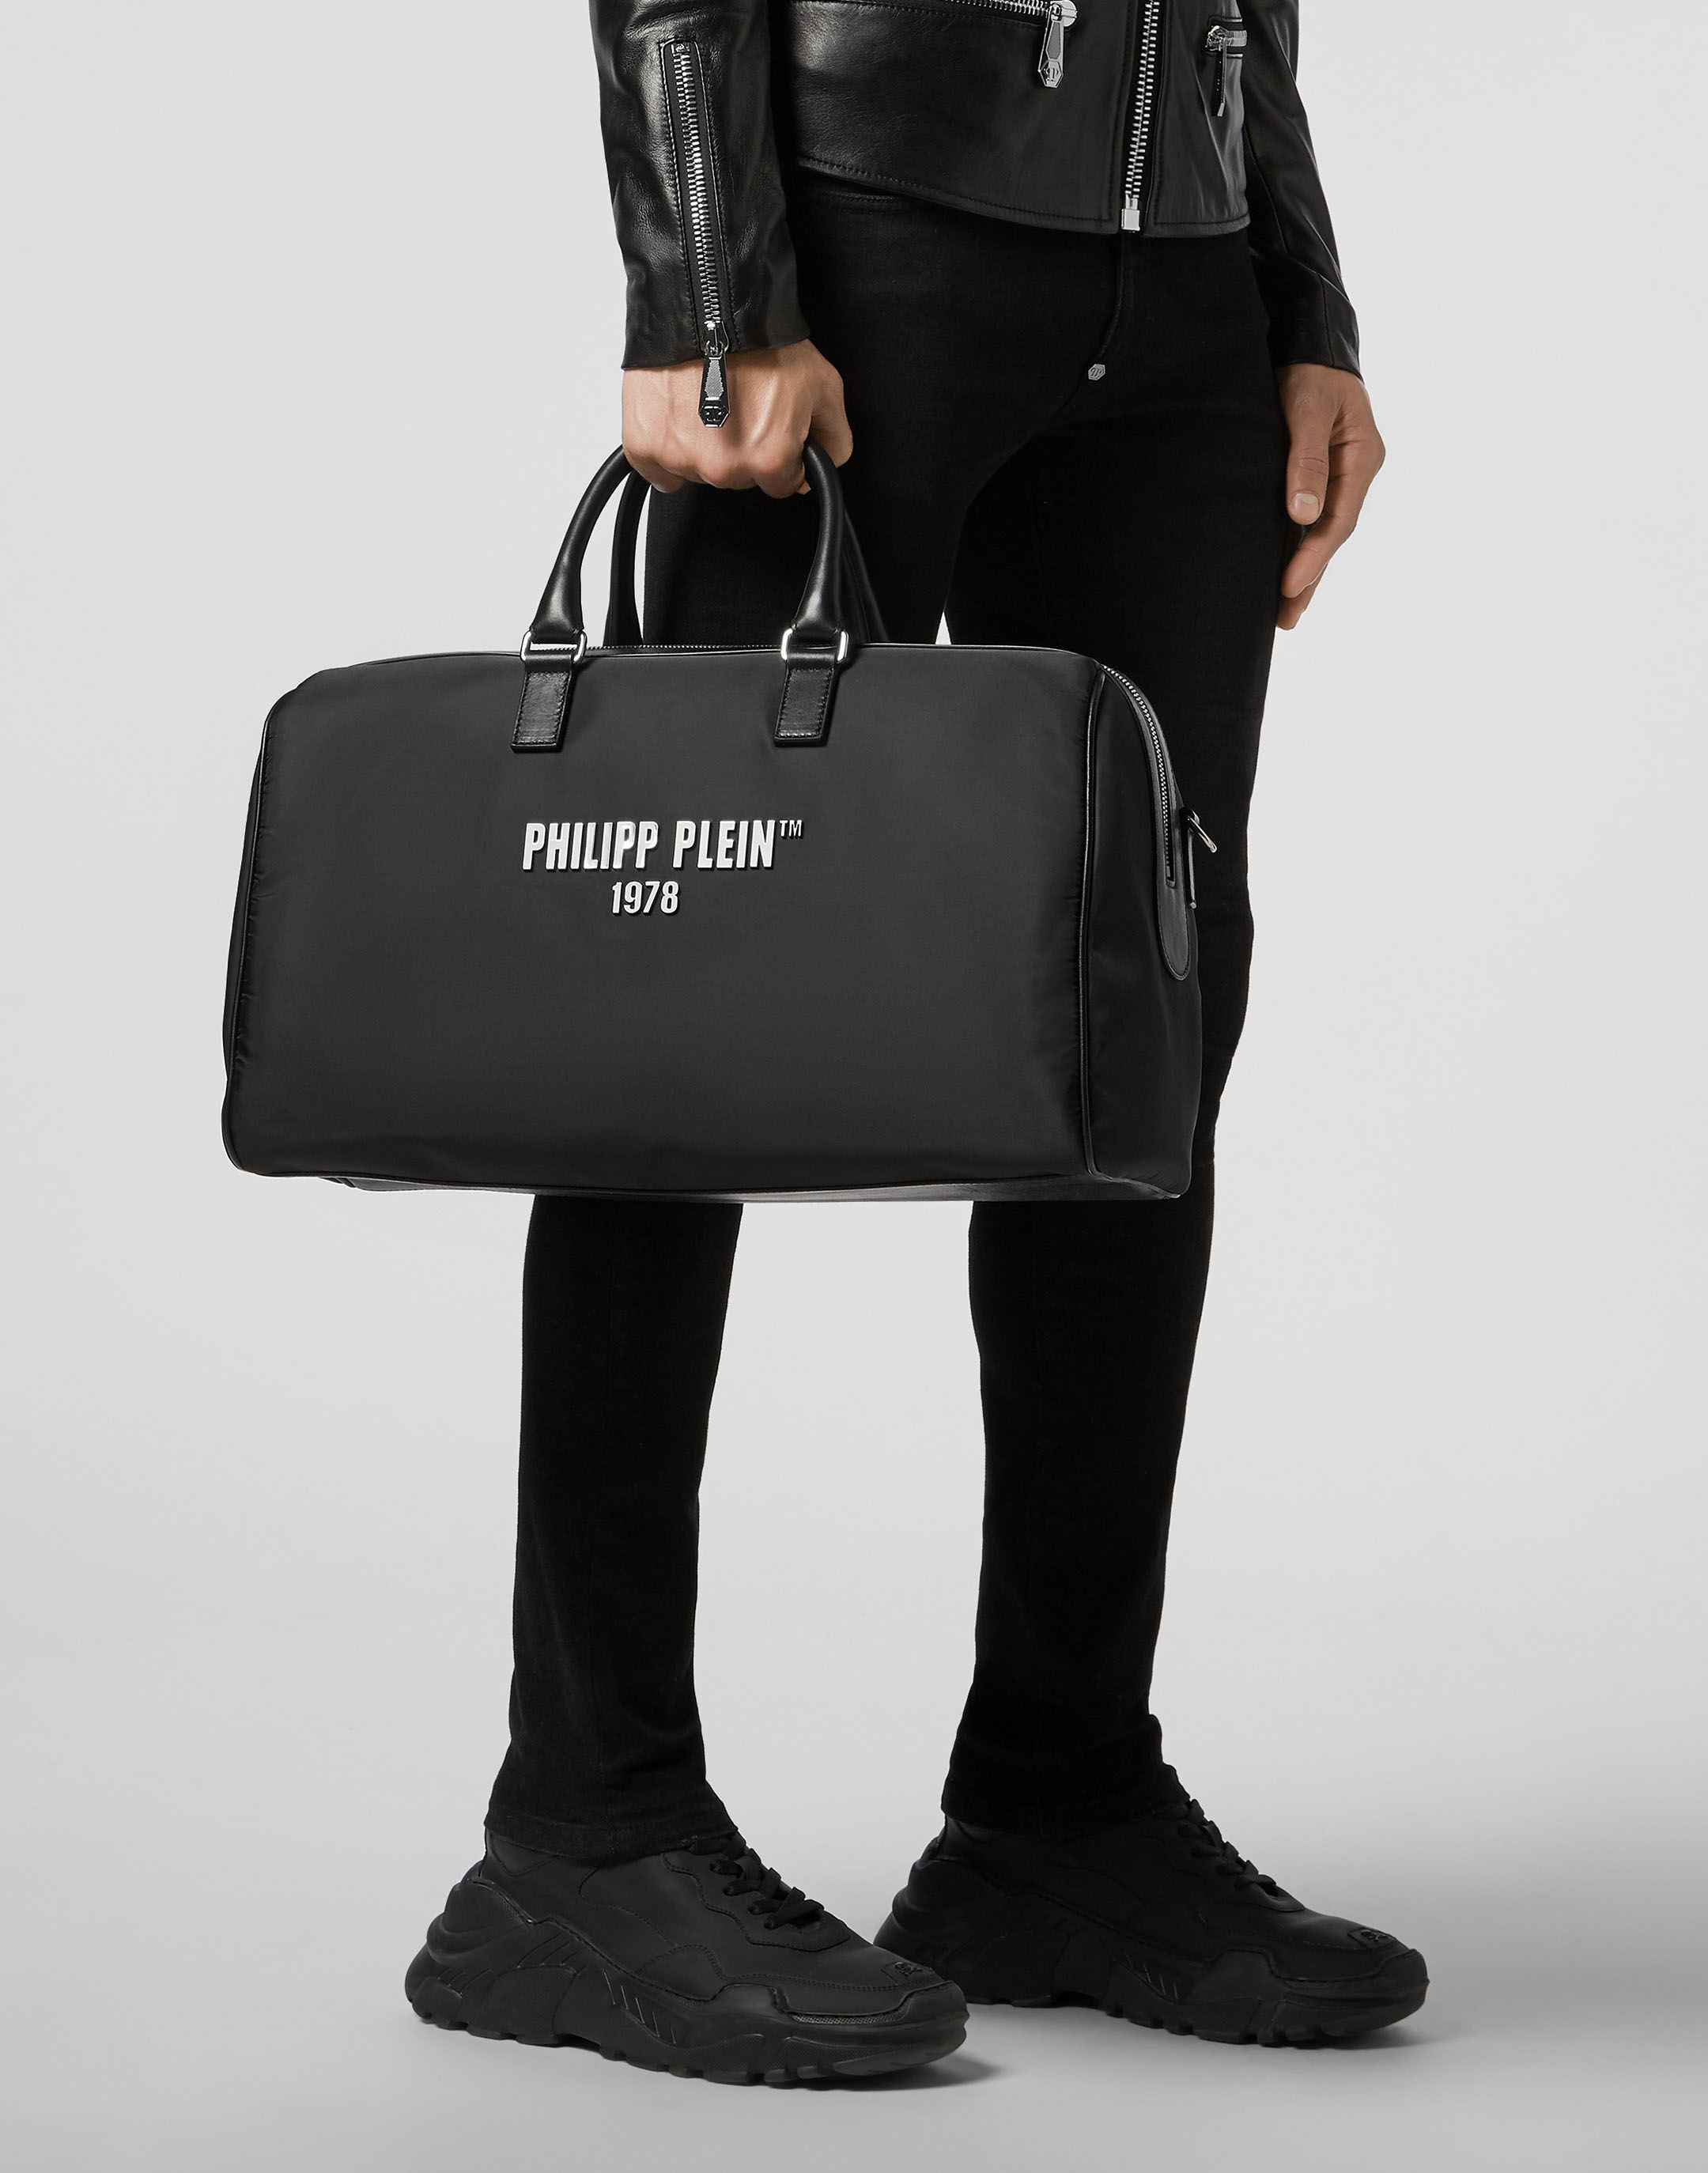 Medium Travel Bag PP1978 | Philipp Plein